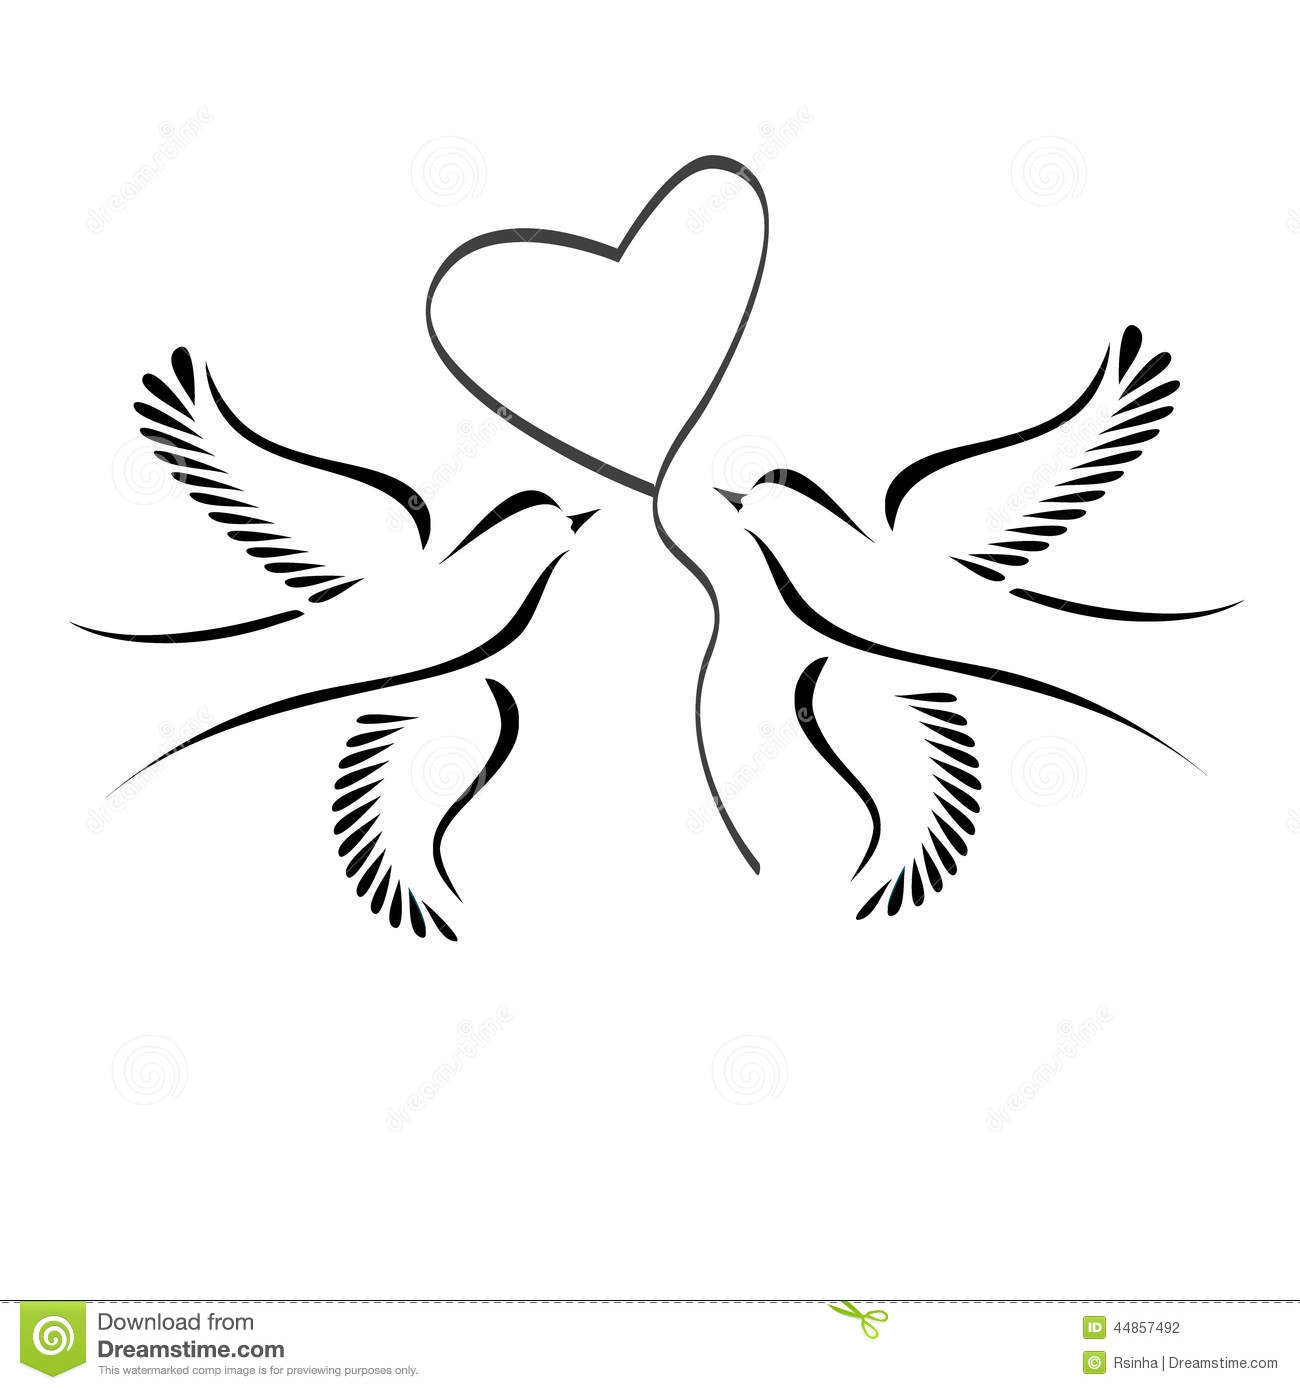 Hochzeit Tauben
 Tauben mit Herzen vektor abbildung Illustration von